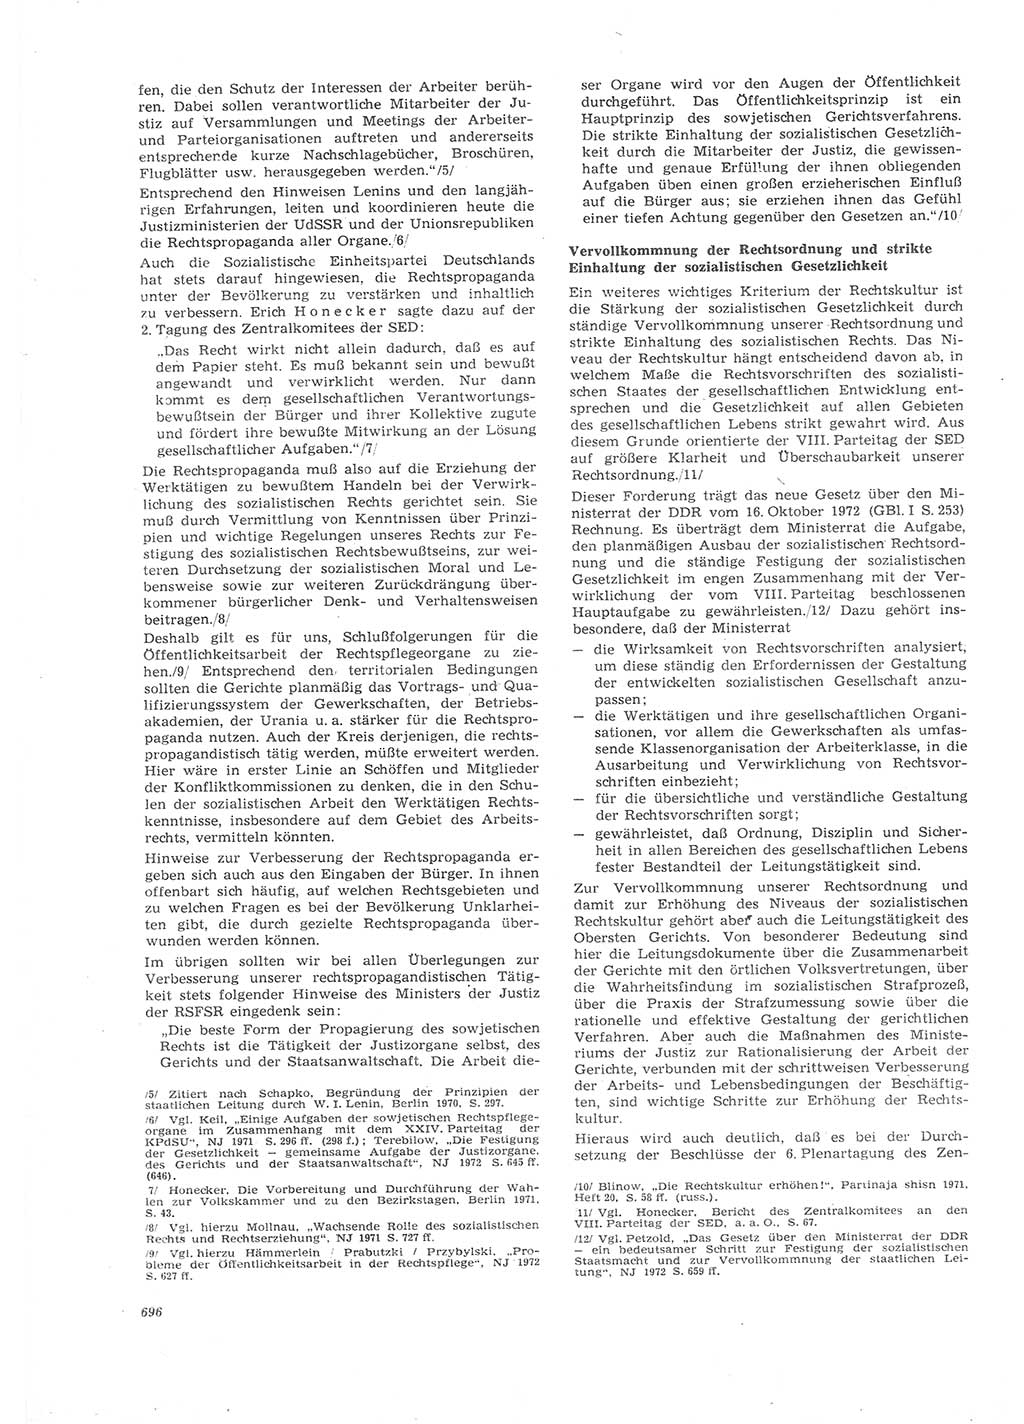 Neue Justiz (NJ), Zeitschrift für Recht und Rechtswissenschaft [Deutsche Demokratische Republik (DDR)], 26. Jahrgang 1972, Seite 696 (NJ DDR 1972, S. 696)